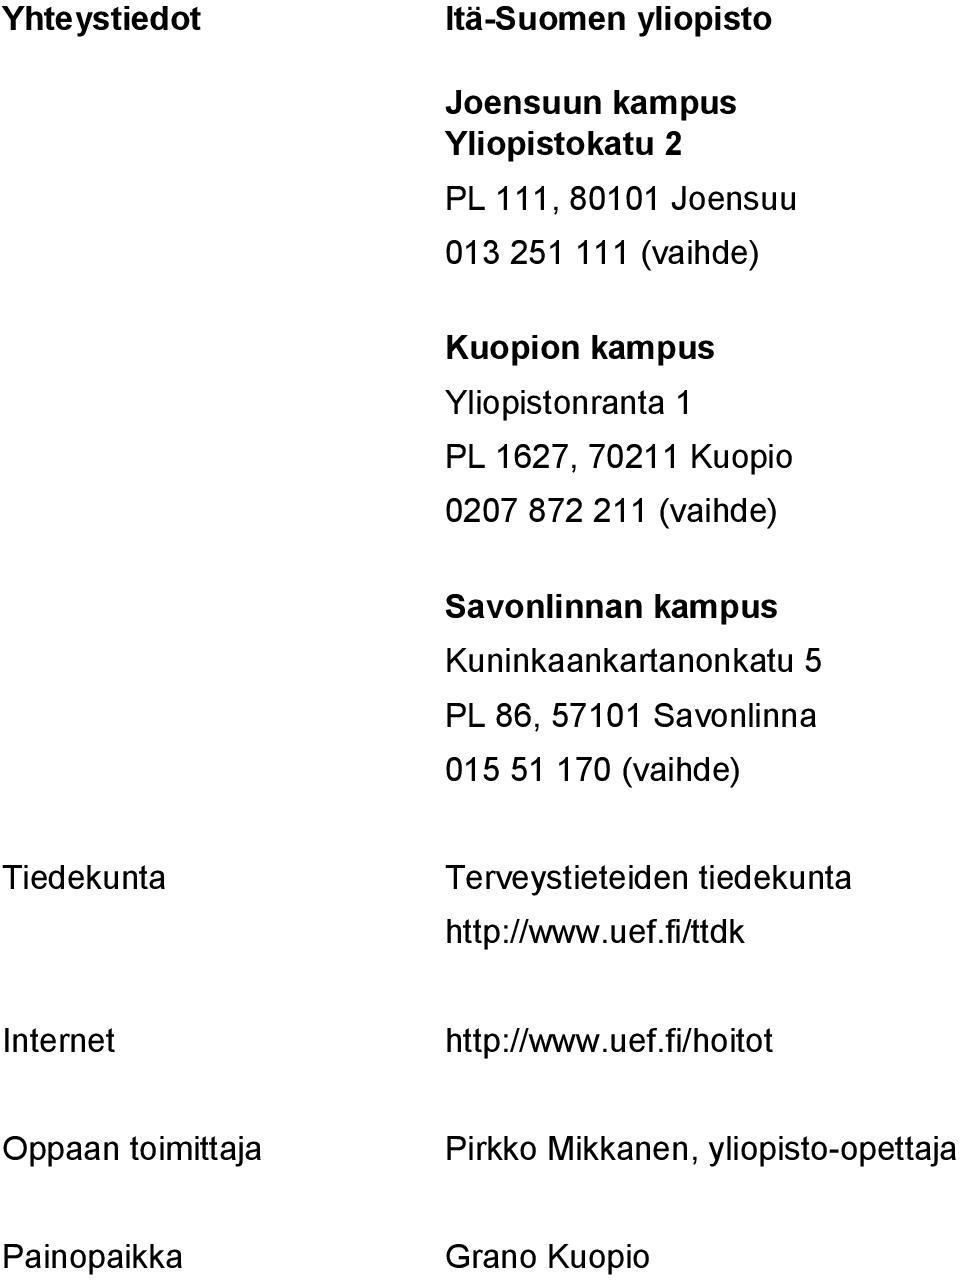 Kuninkaankartanonkatu 5 PL 86, 57101 Savonlinna 015 51 170 (vaihde) Tiedekunta Terveystieteiden tiedekunta